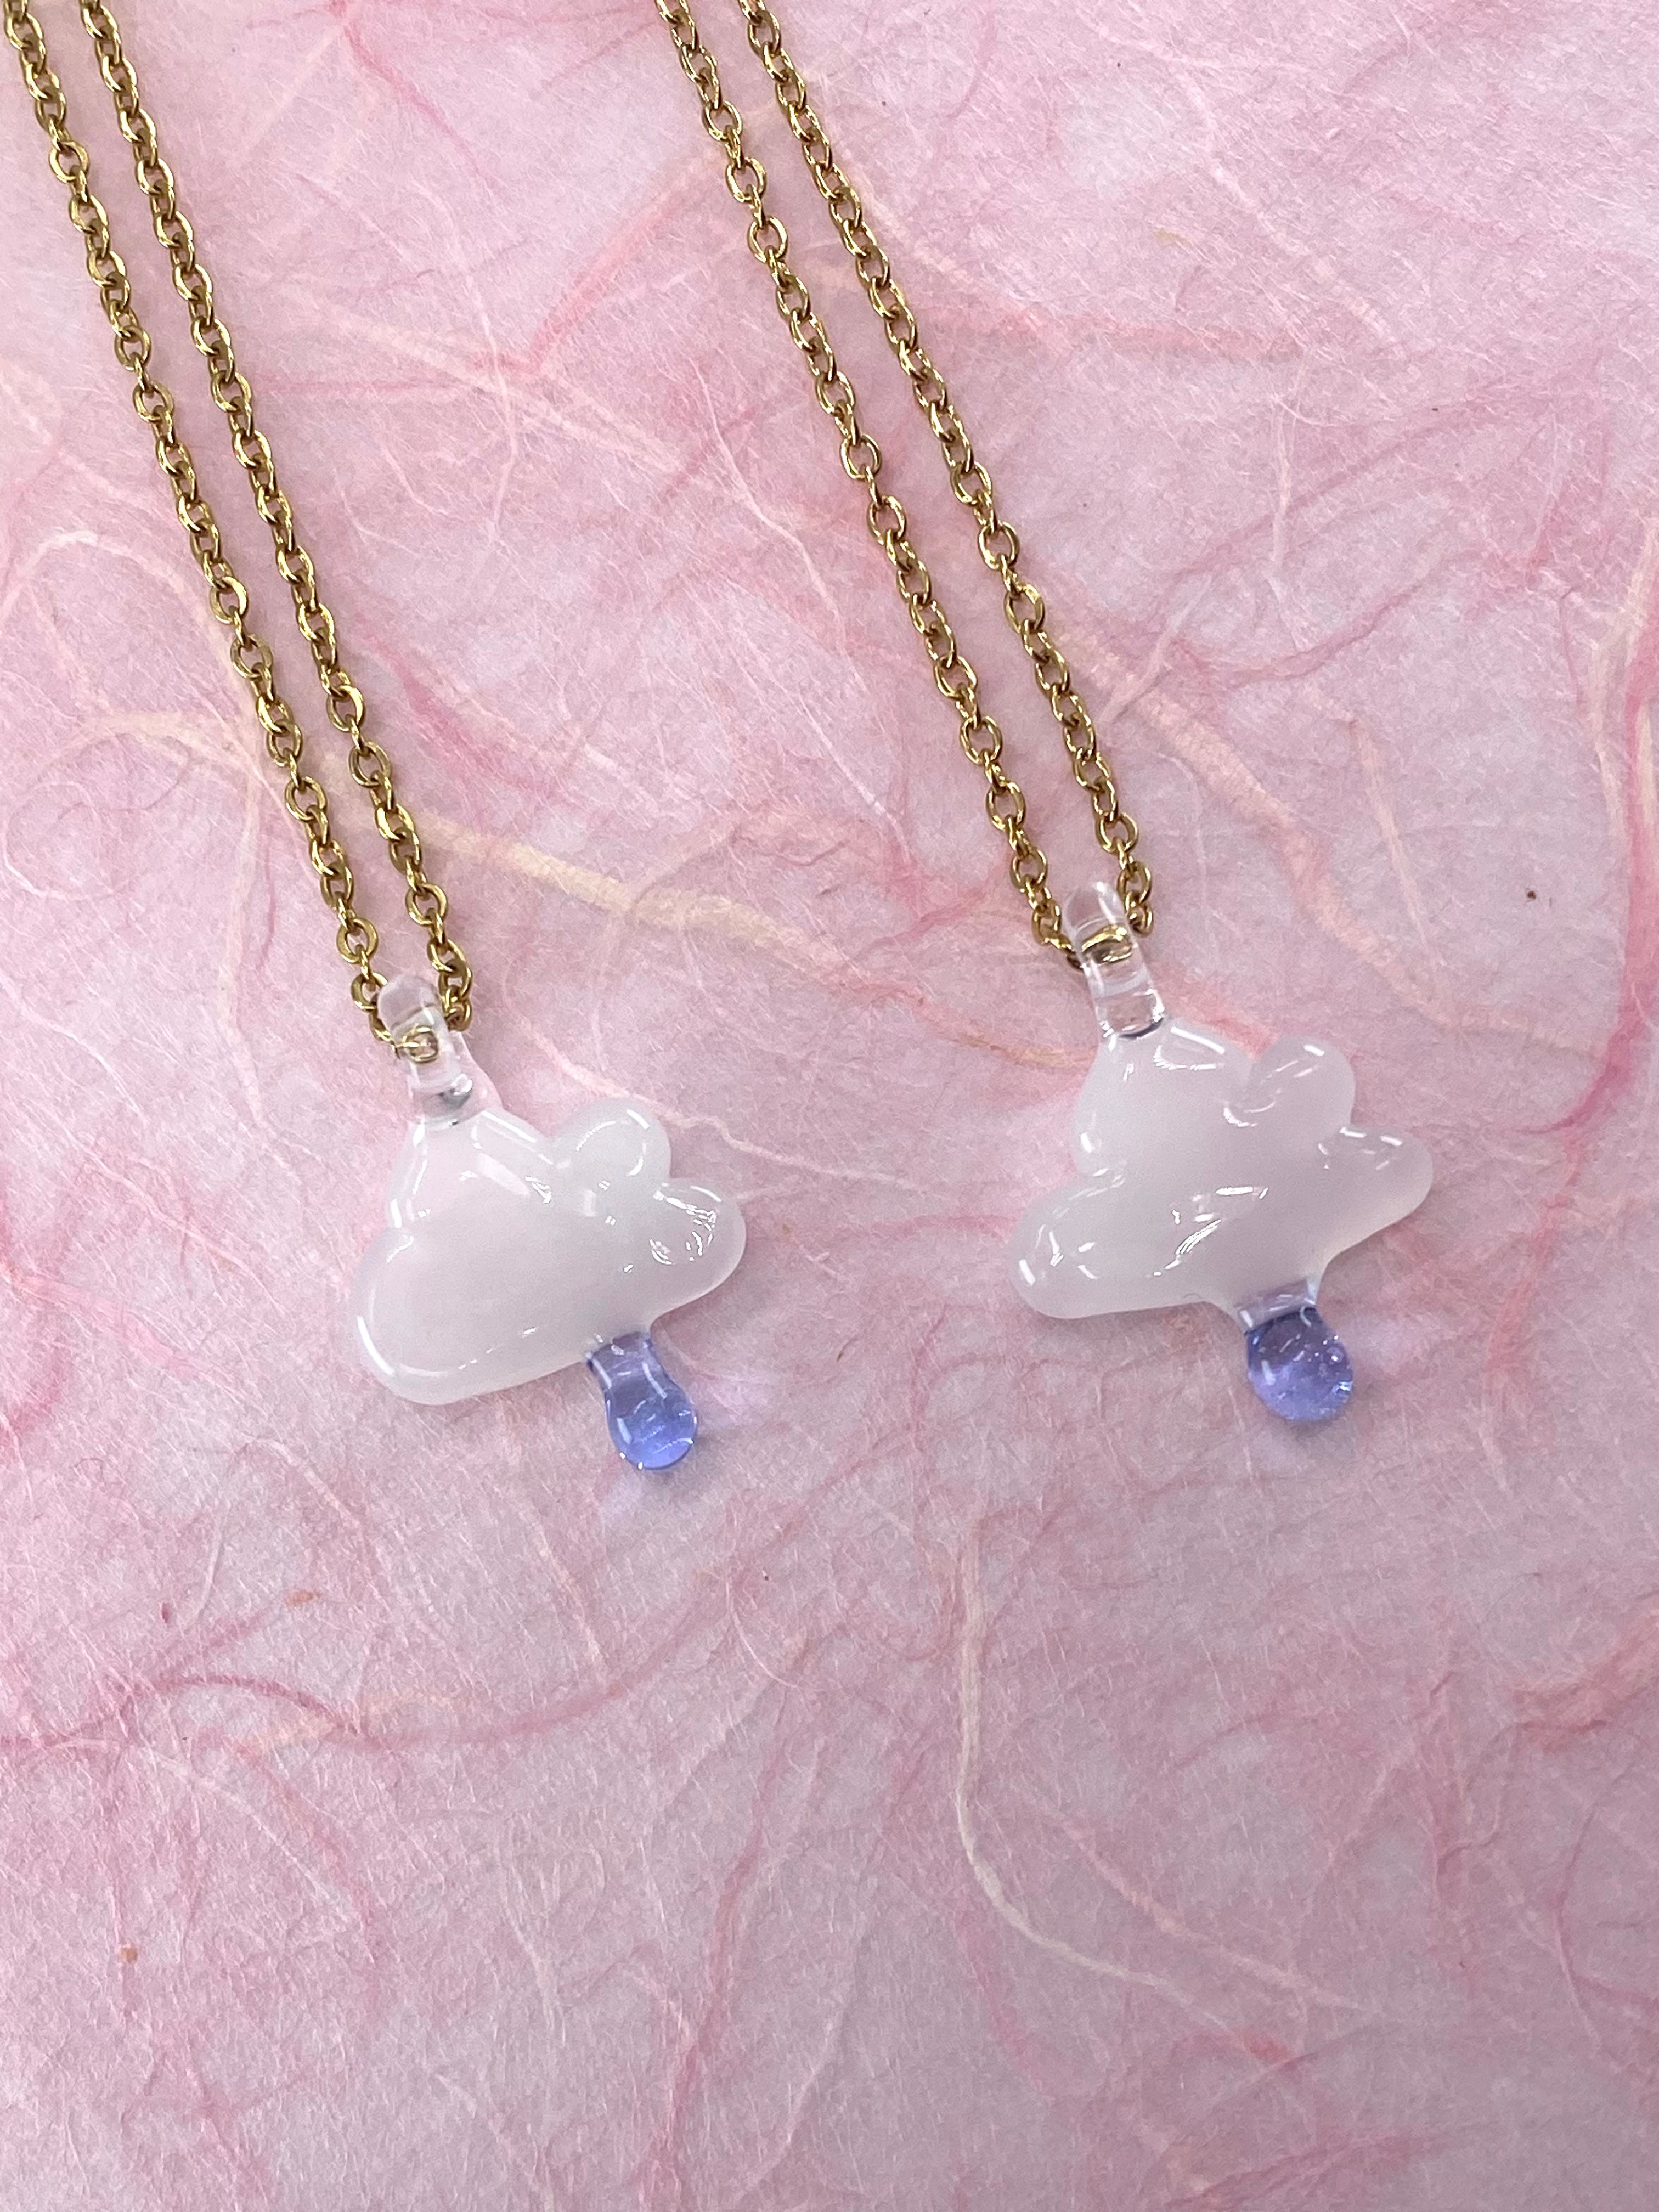 Cumulus Cloud Glass Charm Necklace